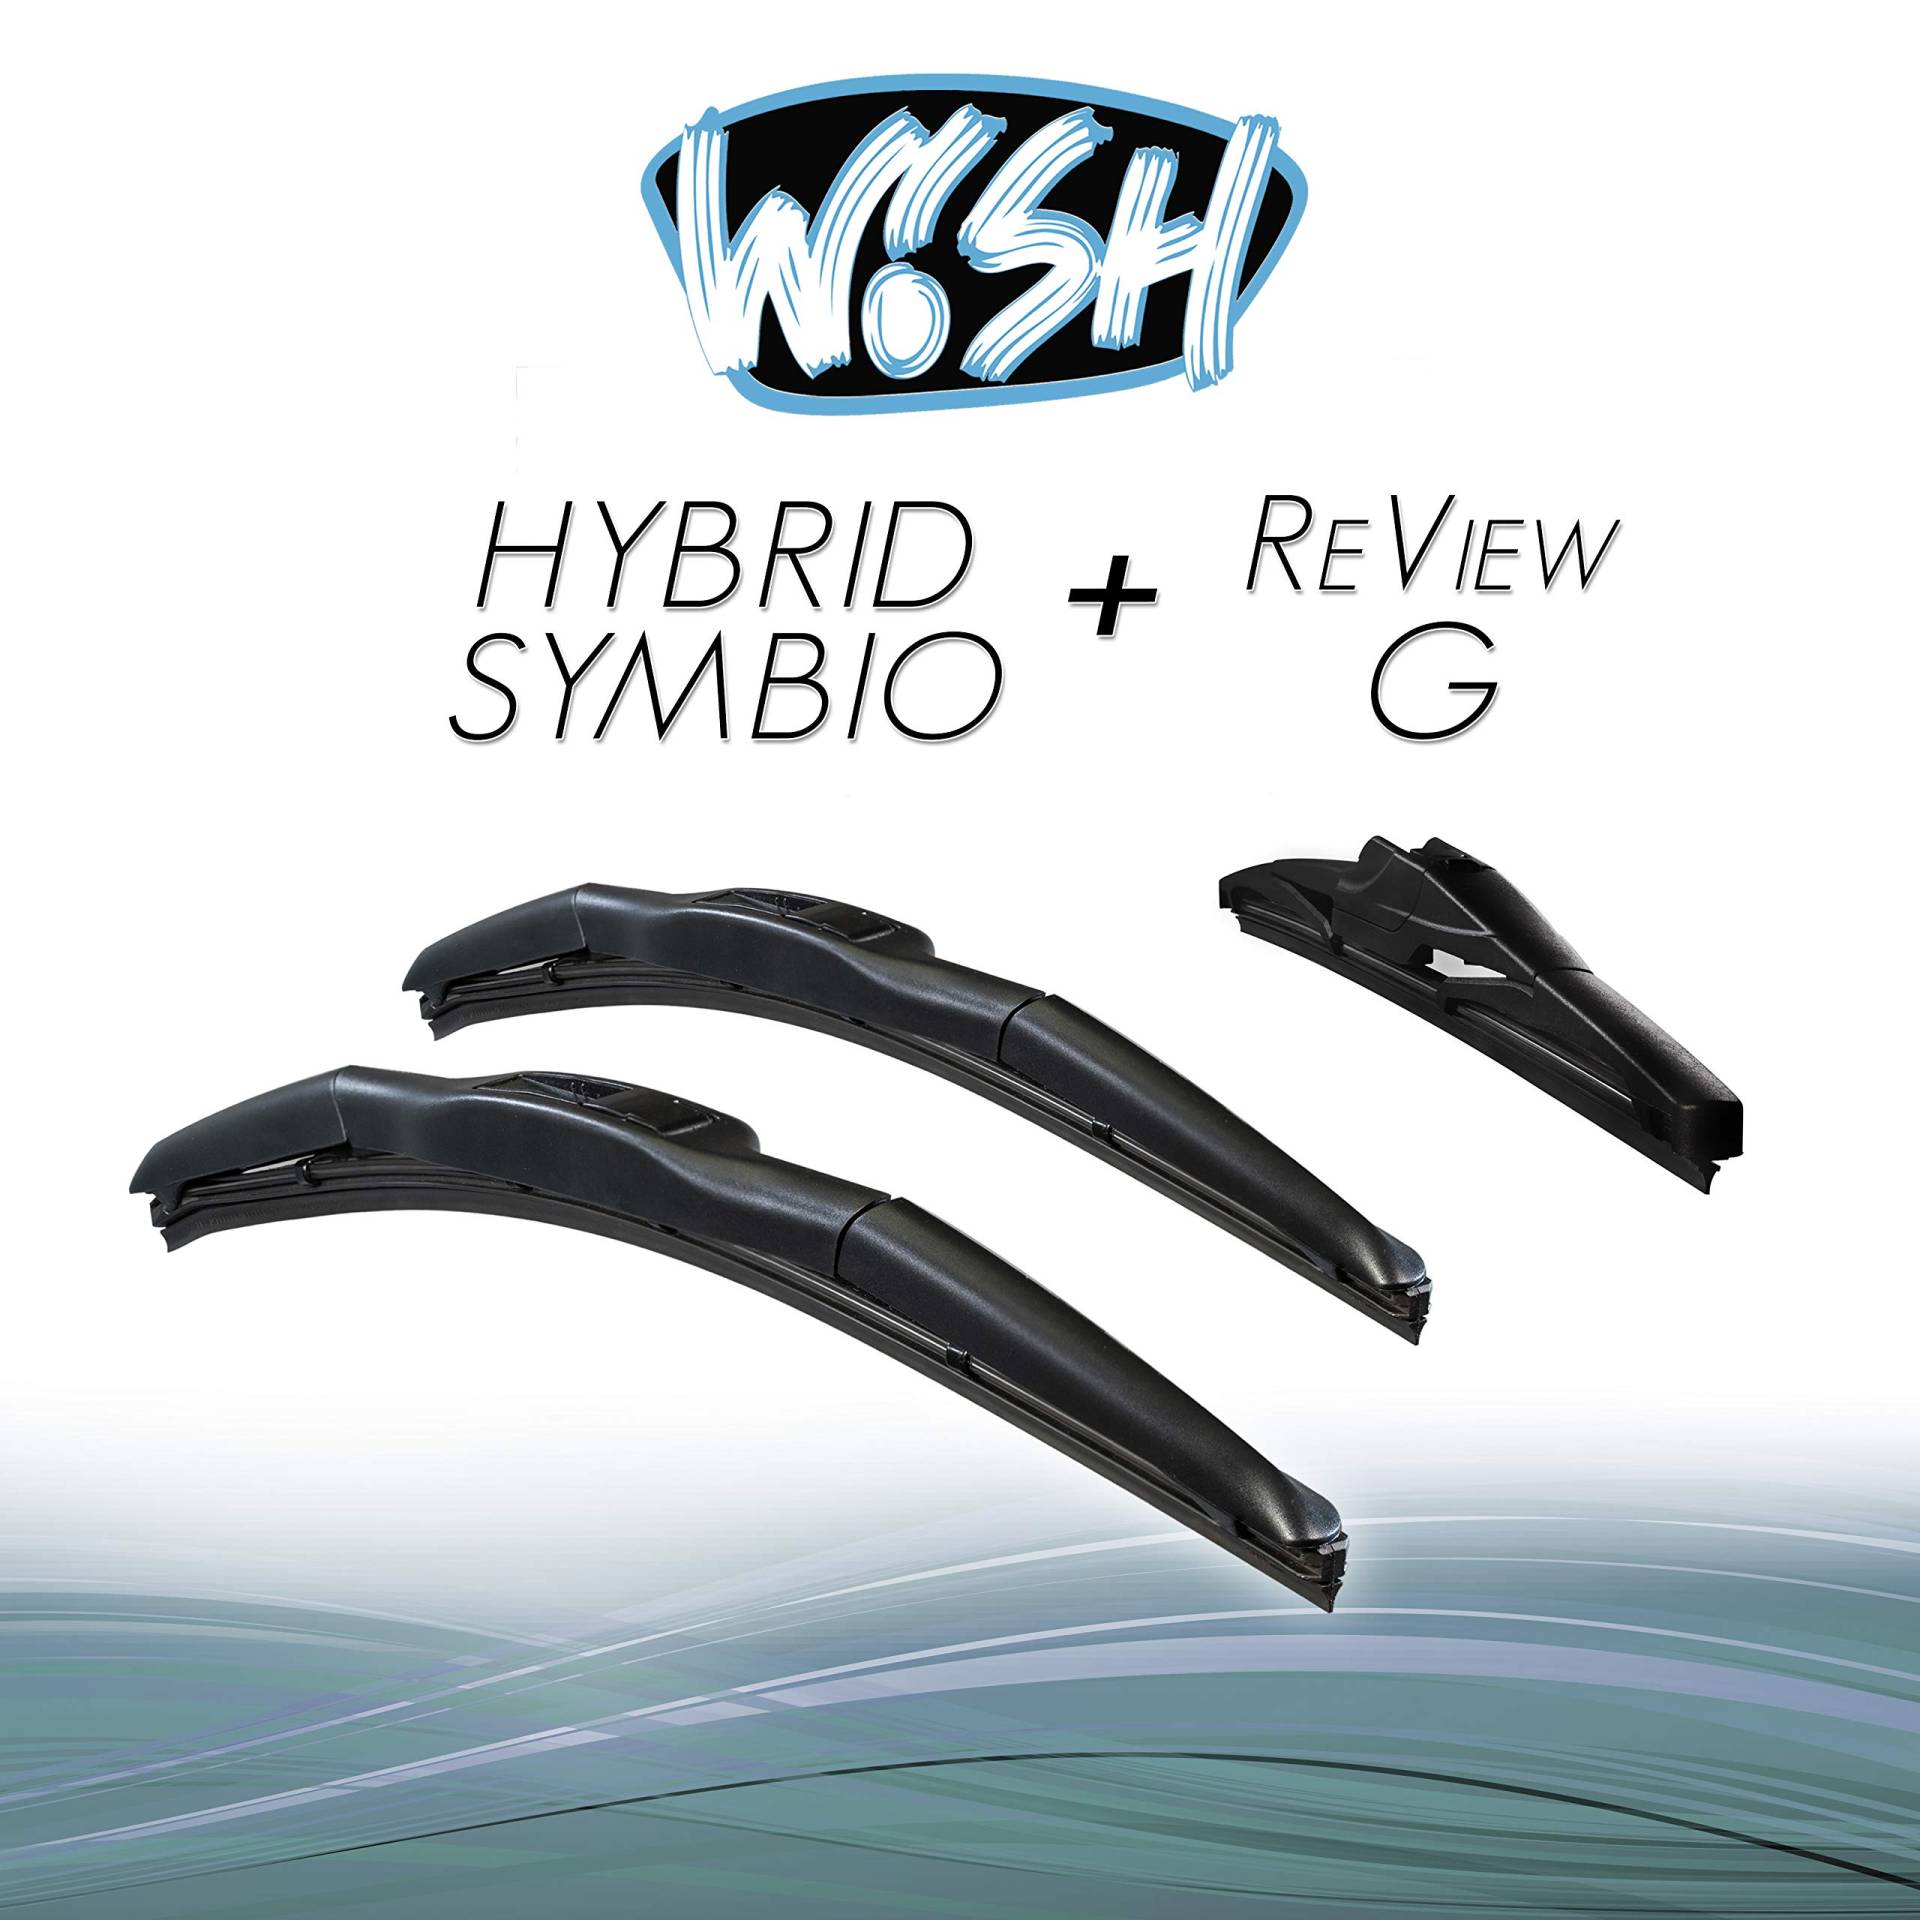 Wish® Hybrid Symbio Satz Front + Heck Scheibenwischer Länge: 26" 650mm / 16" 400mm / 12" 300mm Wischblätter Vorne und Hinten Hybrid-Scheibenwischer + Review G HS26.16.RG12 von Wish